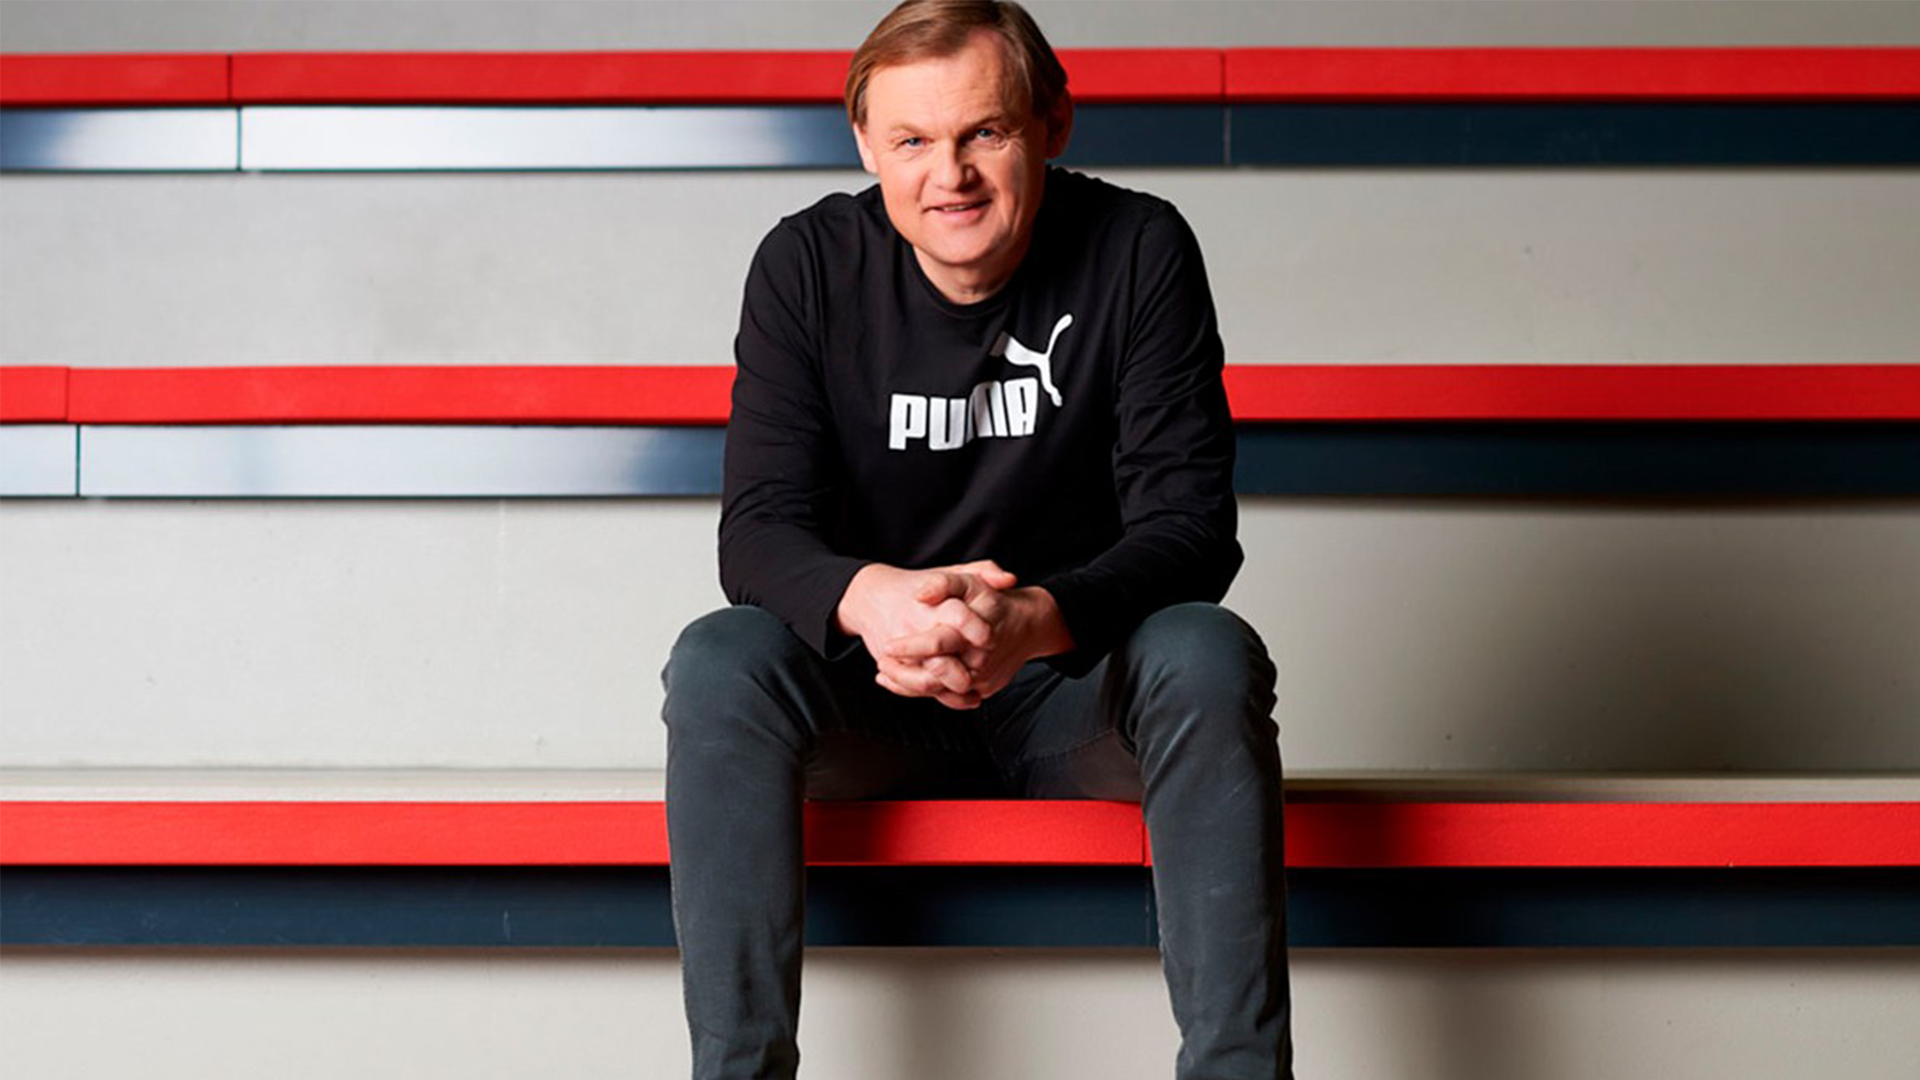 CEO Bjørn Gulden on the big Puma comeback